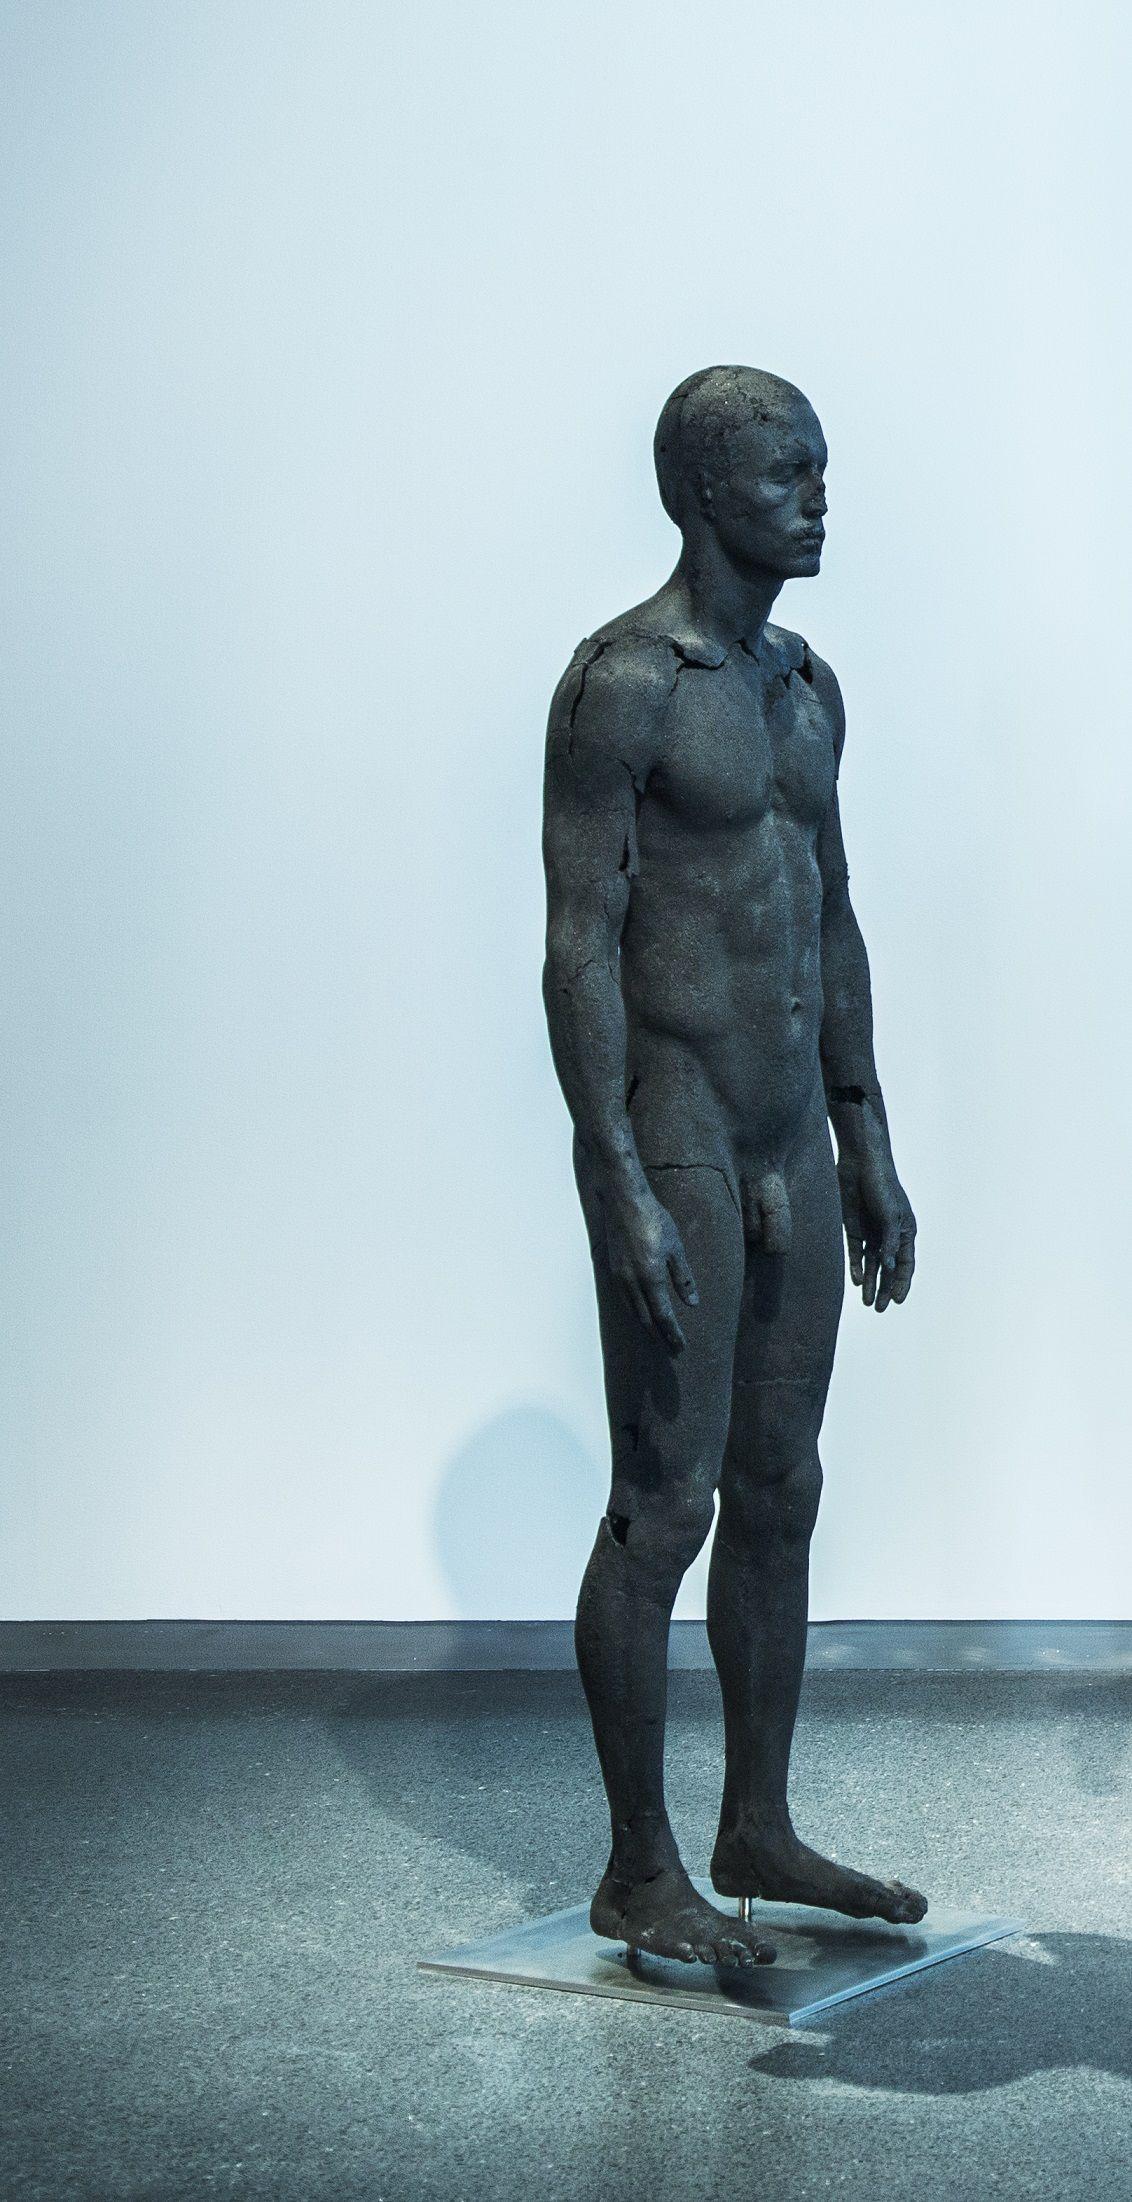 The Presence of Absence - Male (I) est une sculpture unique en charbon, acier inoxydable et résine époxy de l'artiste contemporain Tom Price, dont les dimensions sont de 183 × 50 × 50 cm (72 × 19,7 × 19,7 in). 
La sculpture est signée et accompagnée